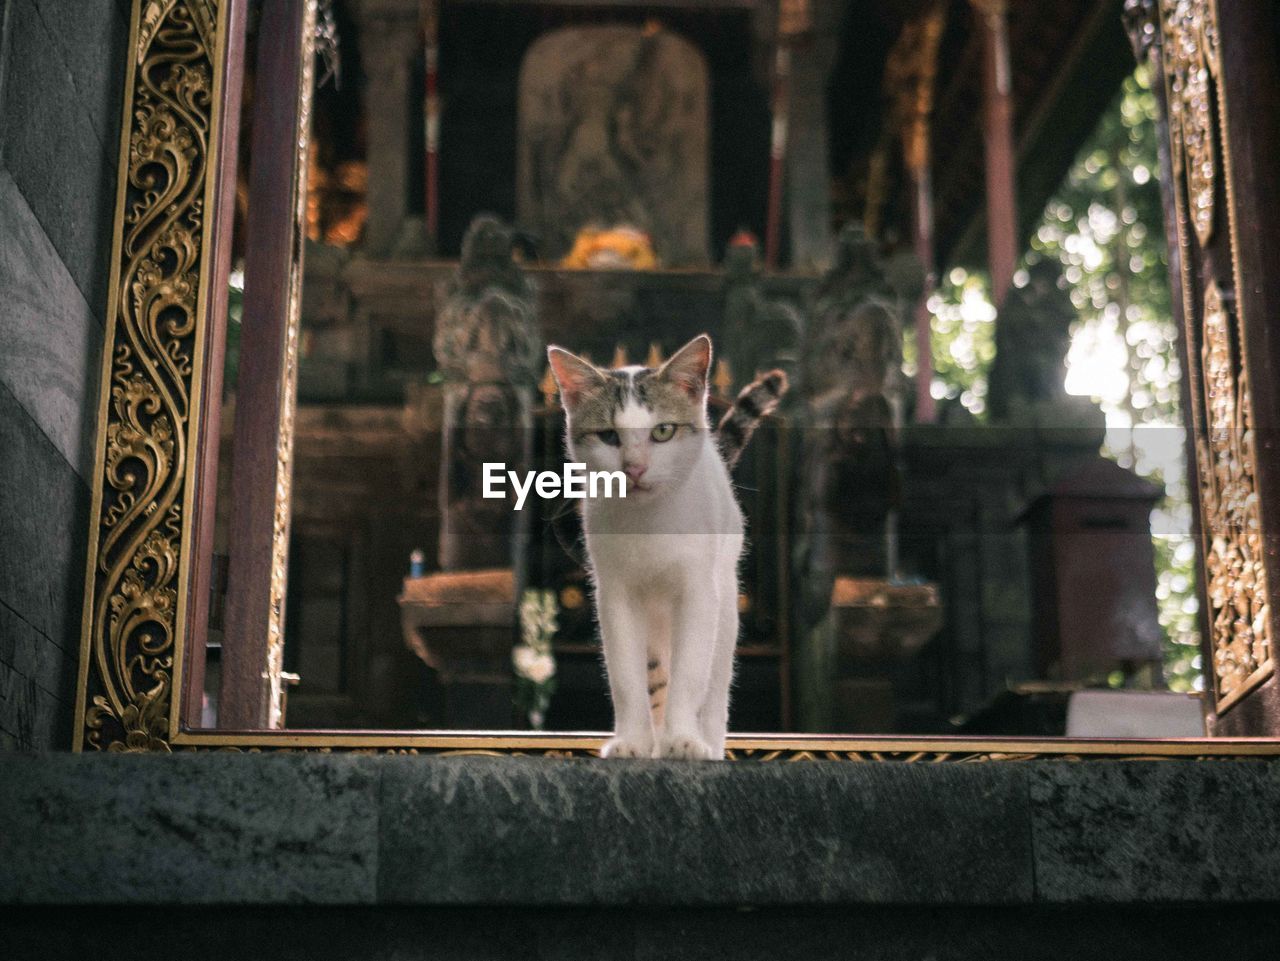 Mystical cat of durga temple